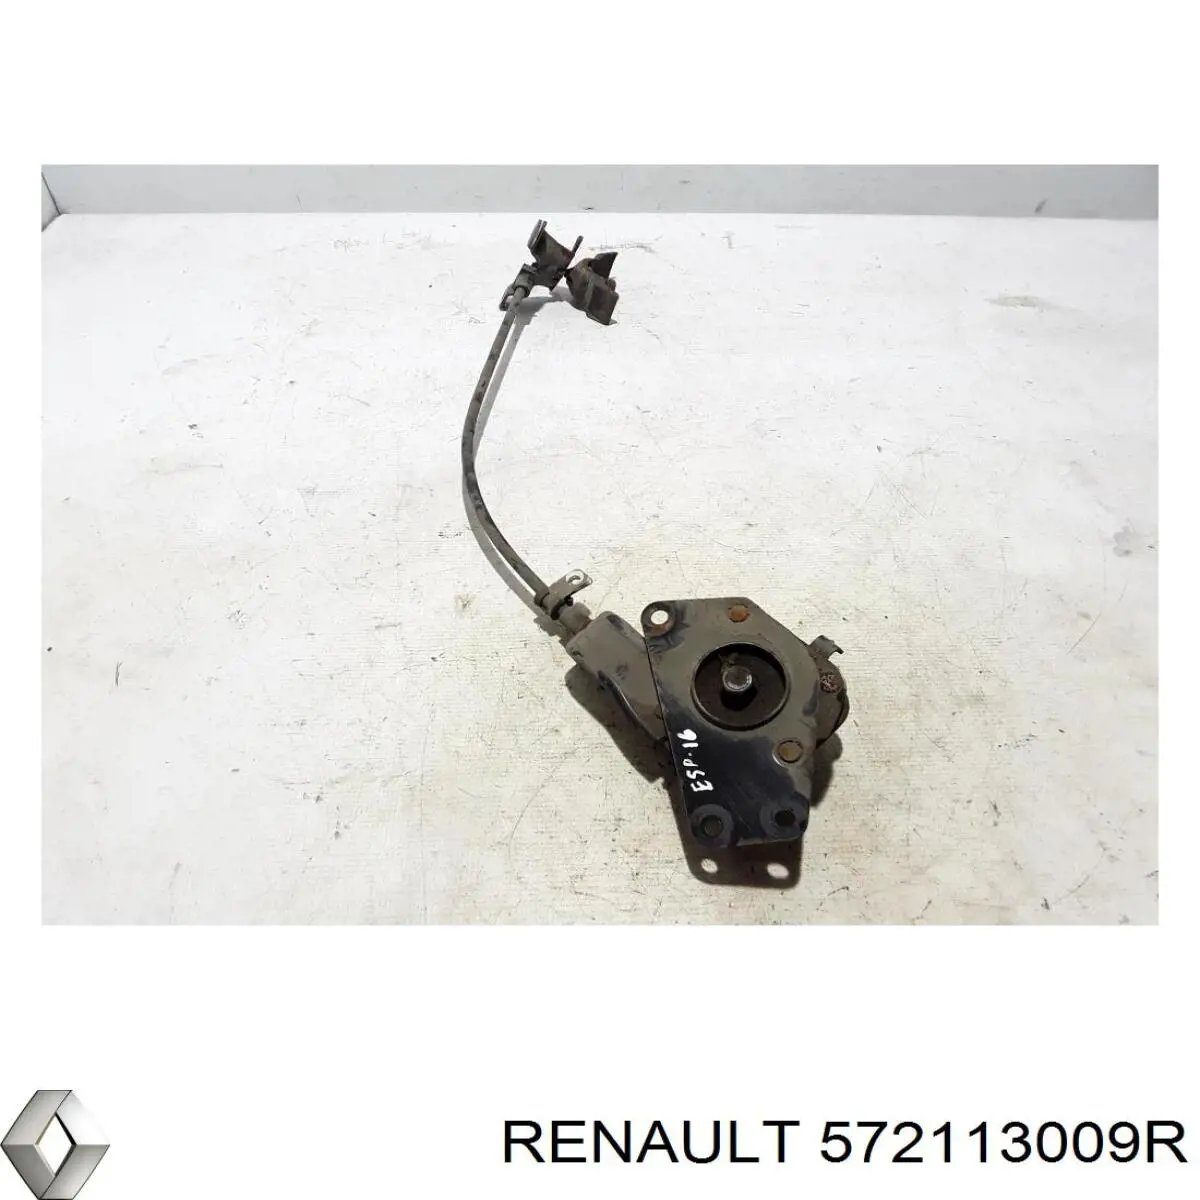 Cabrestante de rueda de repuesto para Renault Scenic (R9)